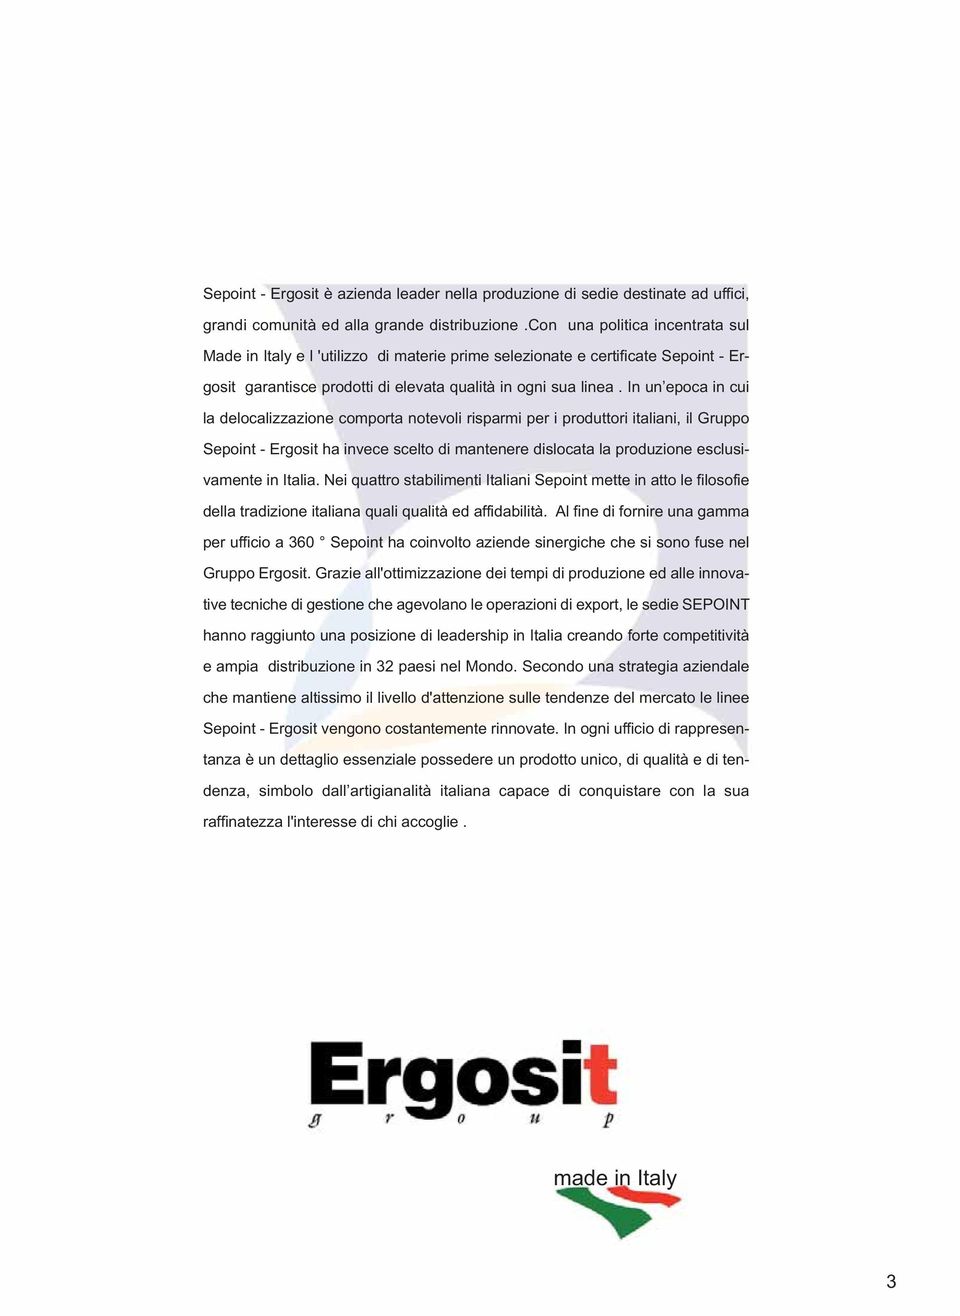 In un epoca in cui la delocalizzazione comporta notevoli risparmi per i produttori italiani, il Gruppo Sepoint - Ergosit ha invece scelto di mantenere dislocata la produzione esclusivamente in Italia.